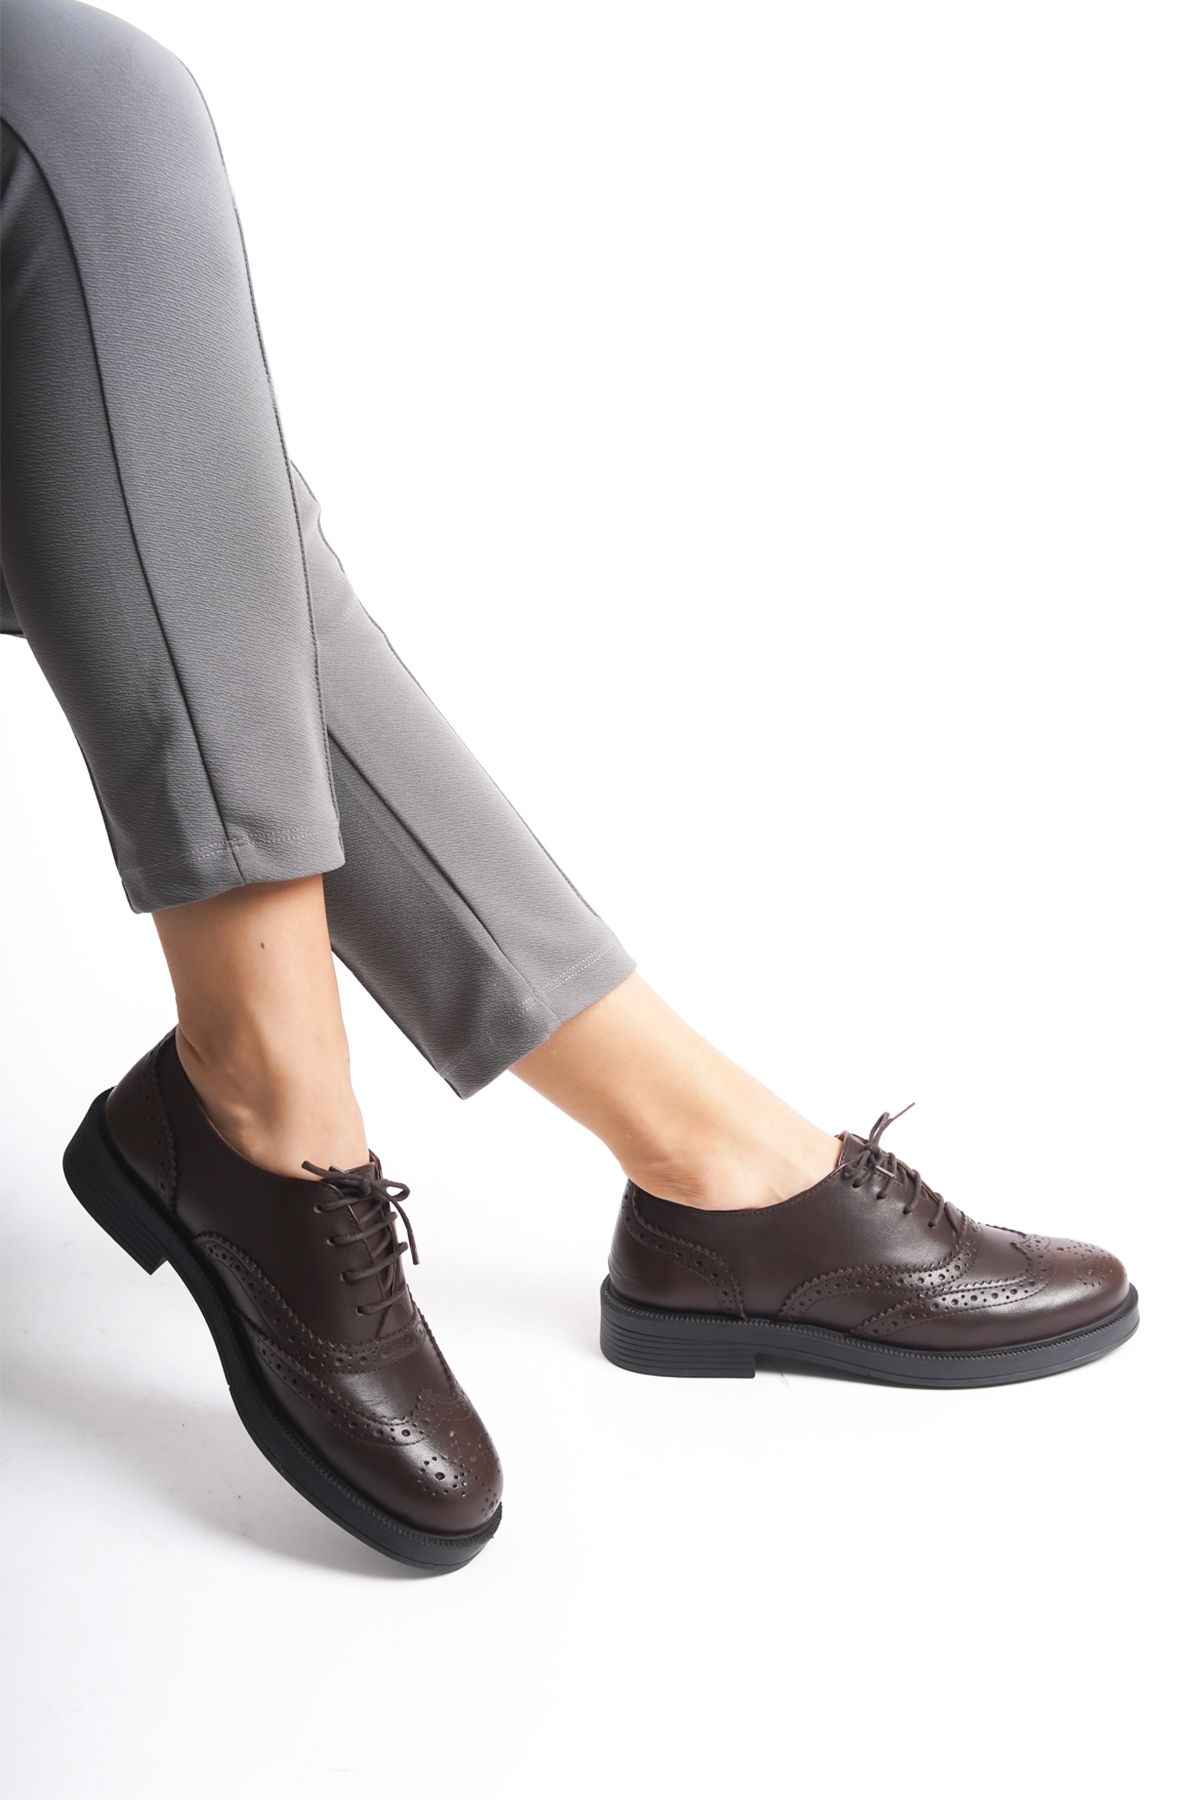 GRADA Hakiki Deri Kadın Kahverengi Oxford Ayakkabı Kahve Renk Bağcıklı Günlük Deri Oxford Ayakkabısı